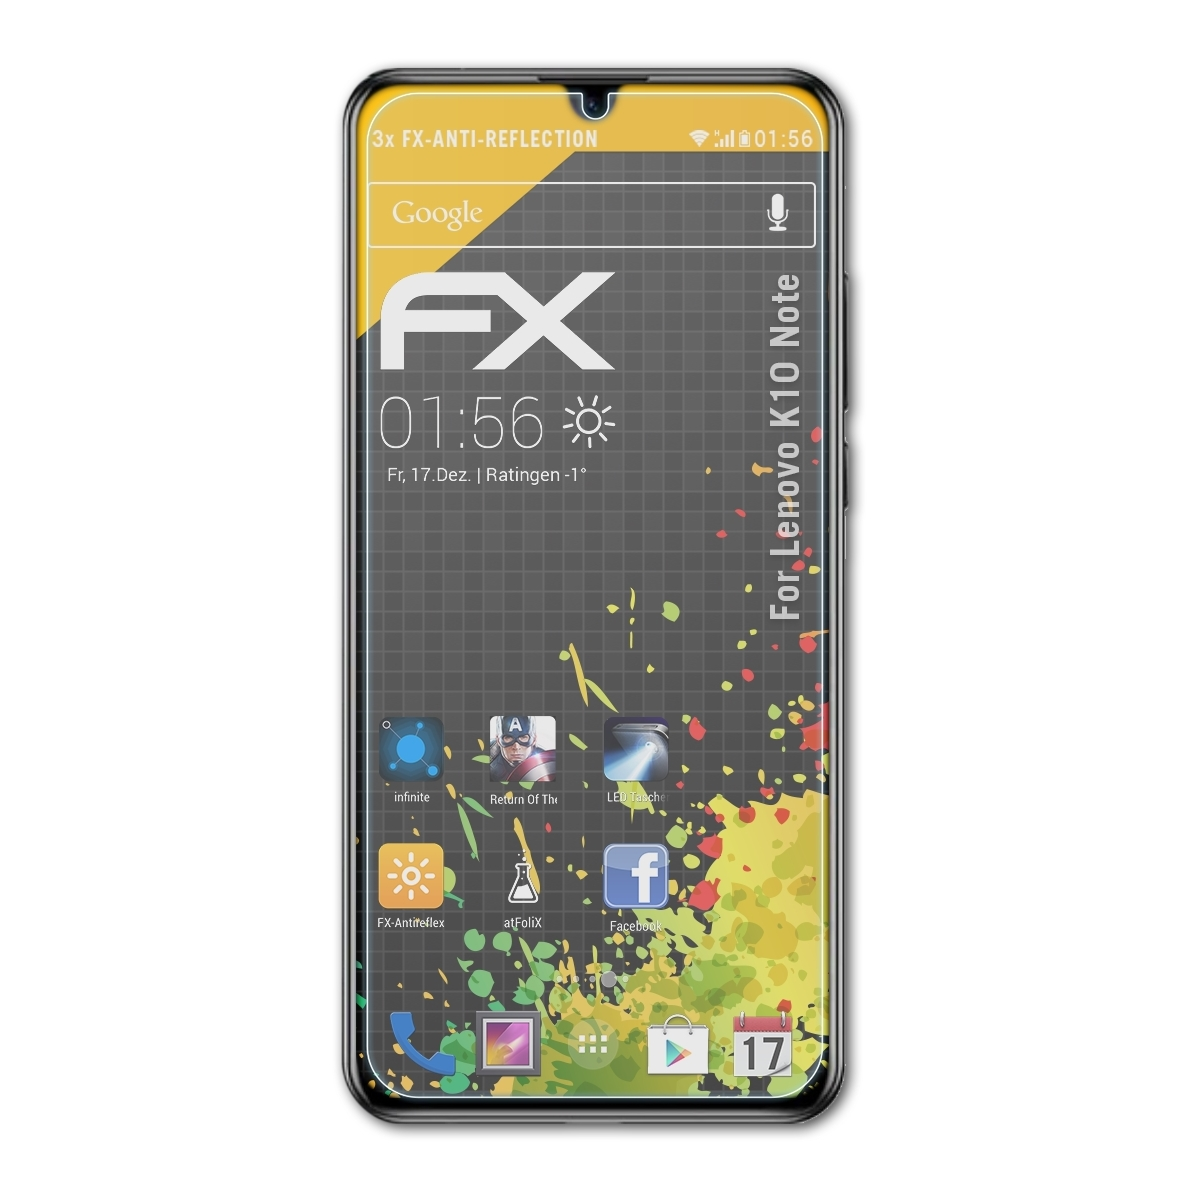 ATFOLIX 3x FX-Antireflex Displayschutz(für Note) K10 Lenovo